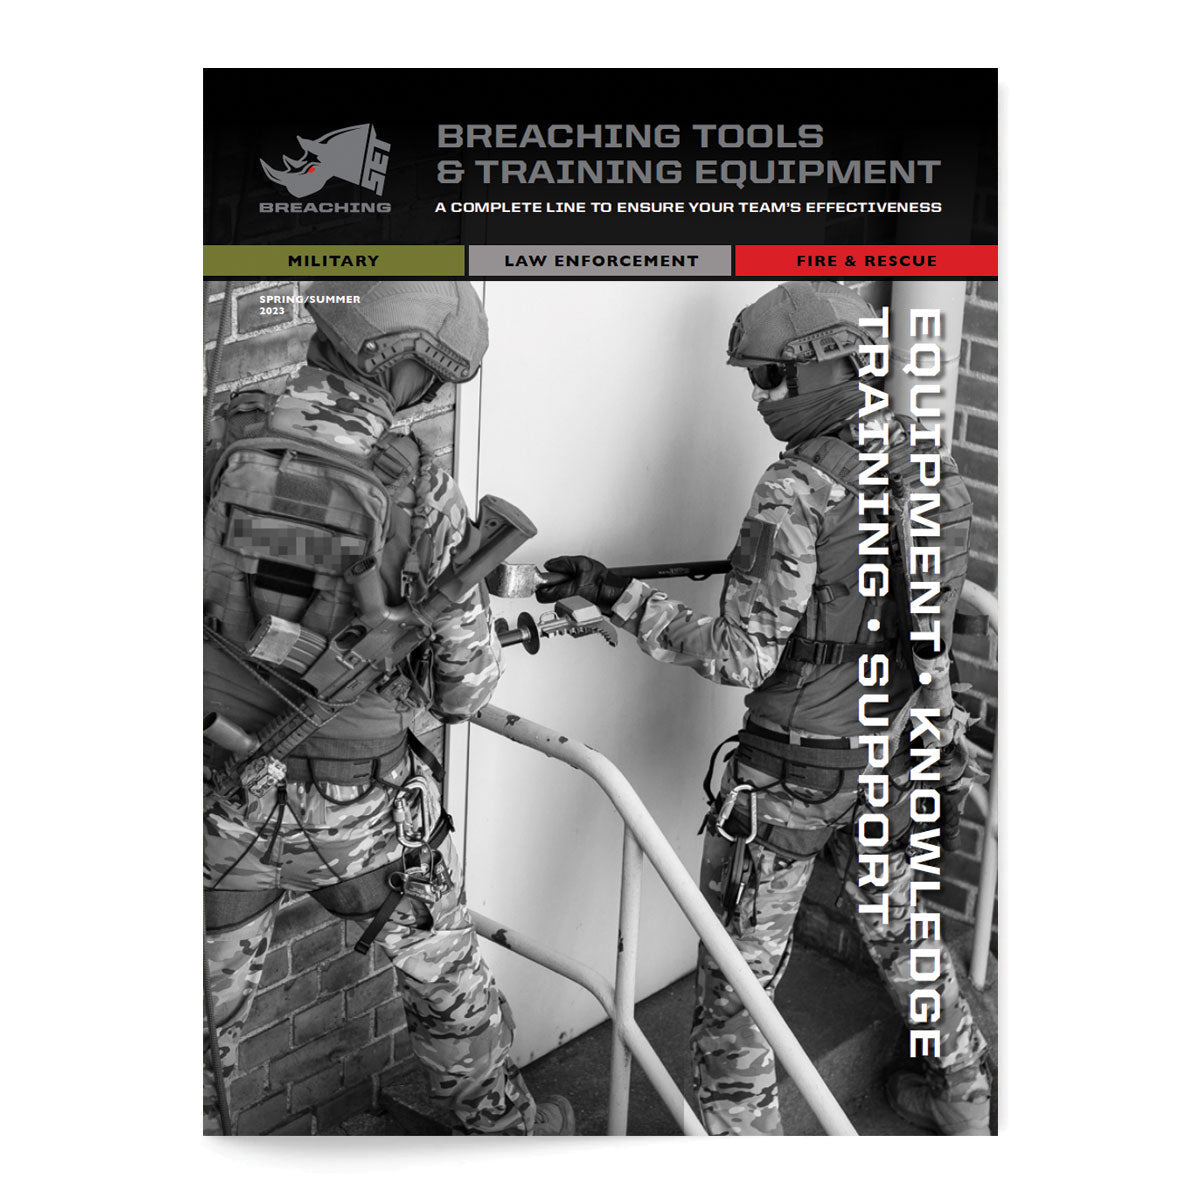 SET Breaching Digital Catalogue Tactical Gear Australia Supplier Distributor Dealer